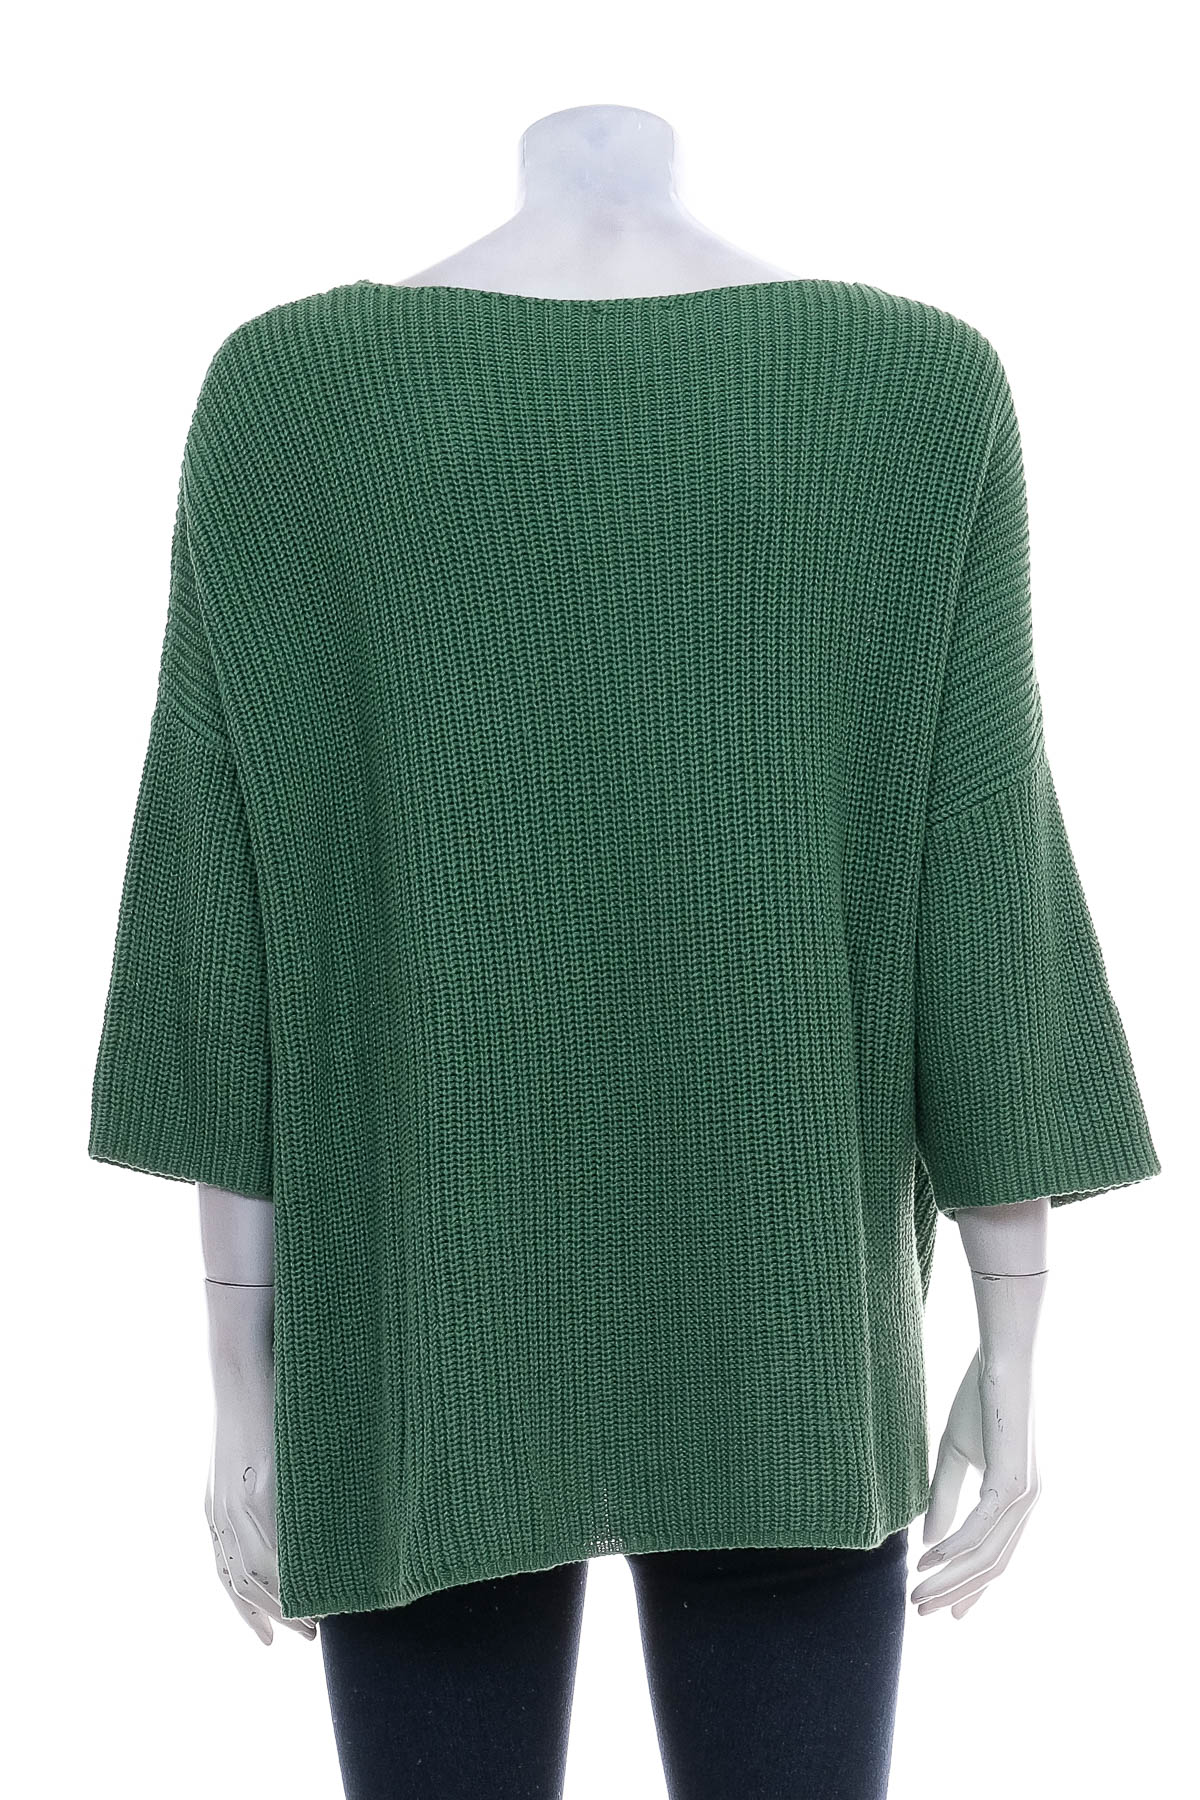 Women's sweater - Kenny S. - 1